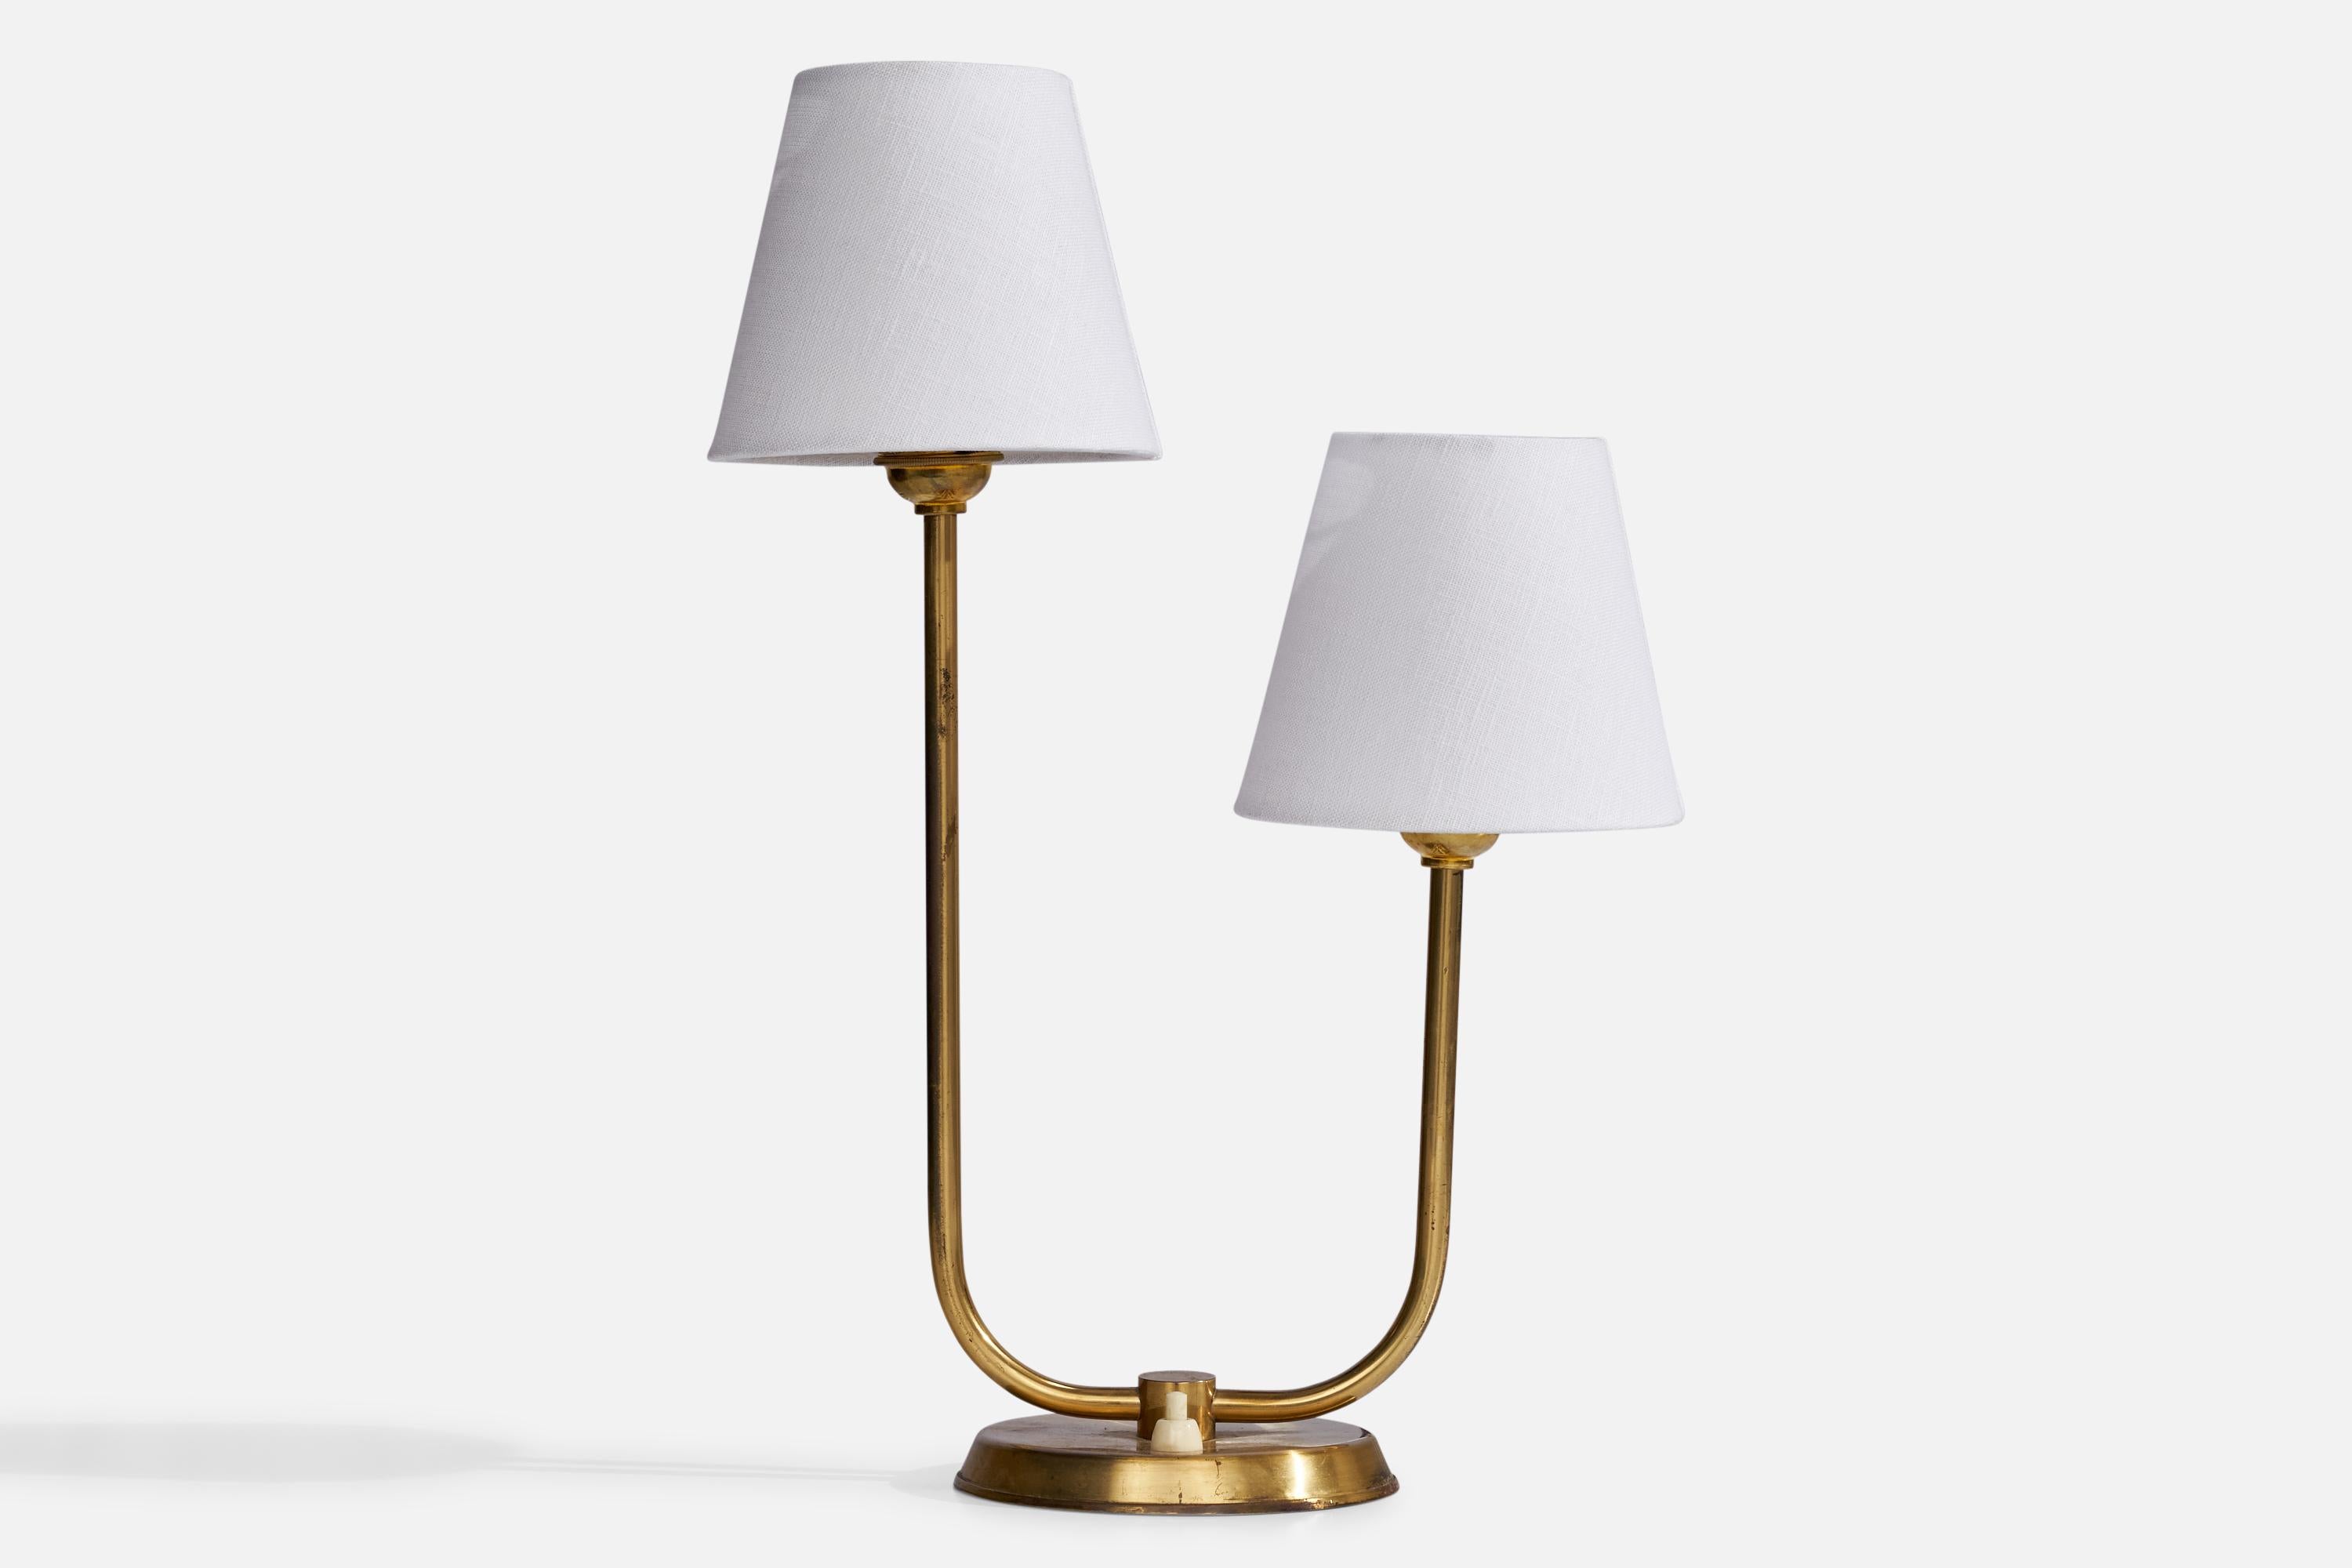 Lampe de table à deux bras en laiton et tissu blanc, conçue et produite en Suède, années 1940.

Dimensions de la lampe (pouces) : 13.3